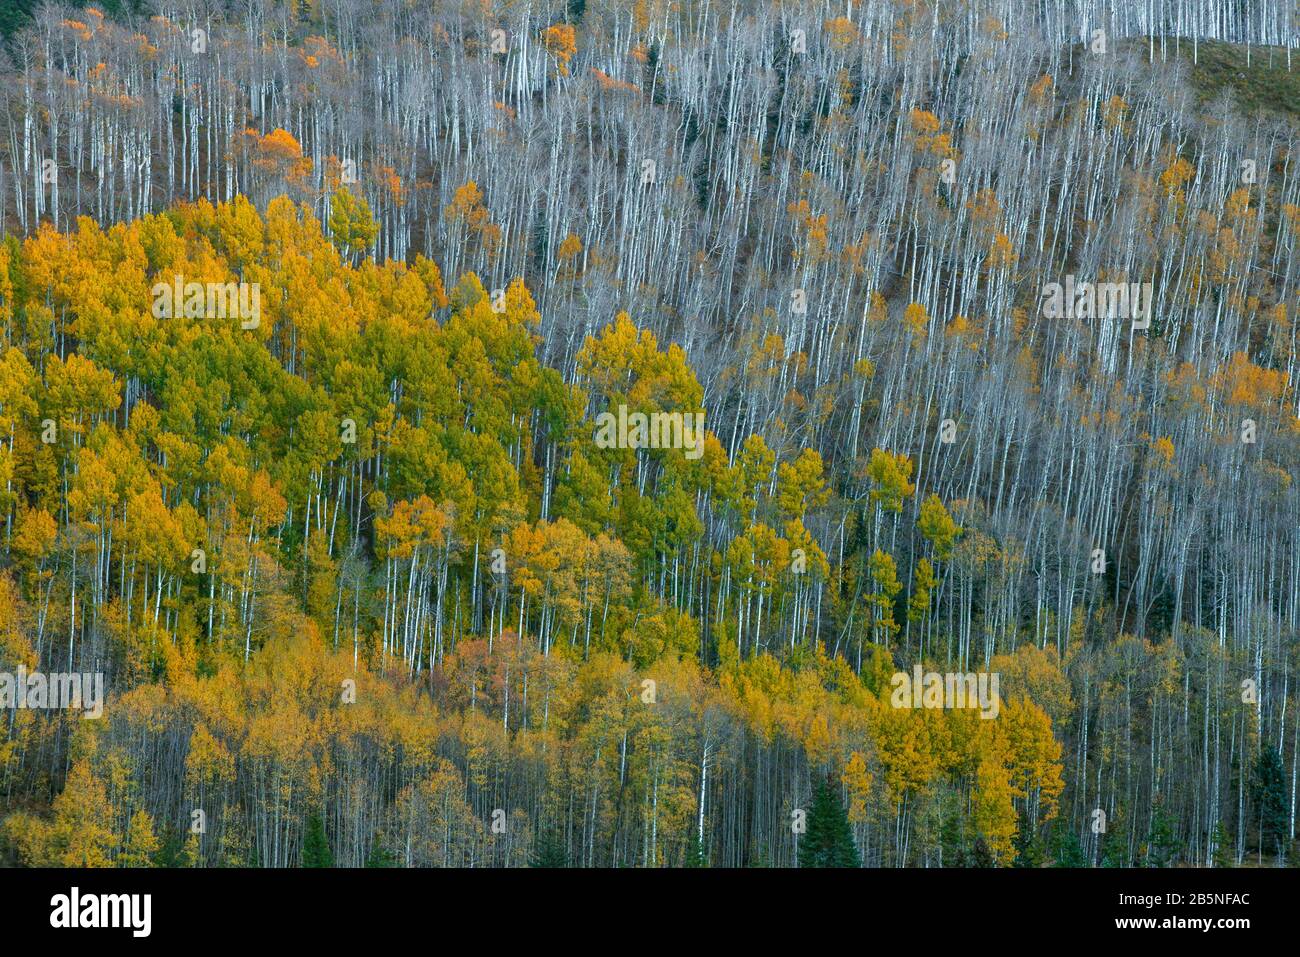 Aspen, Populus Tremula, Dallas Divide, Uncompahgre National Forest, Colorado Stock Photo